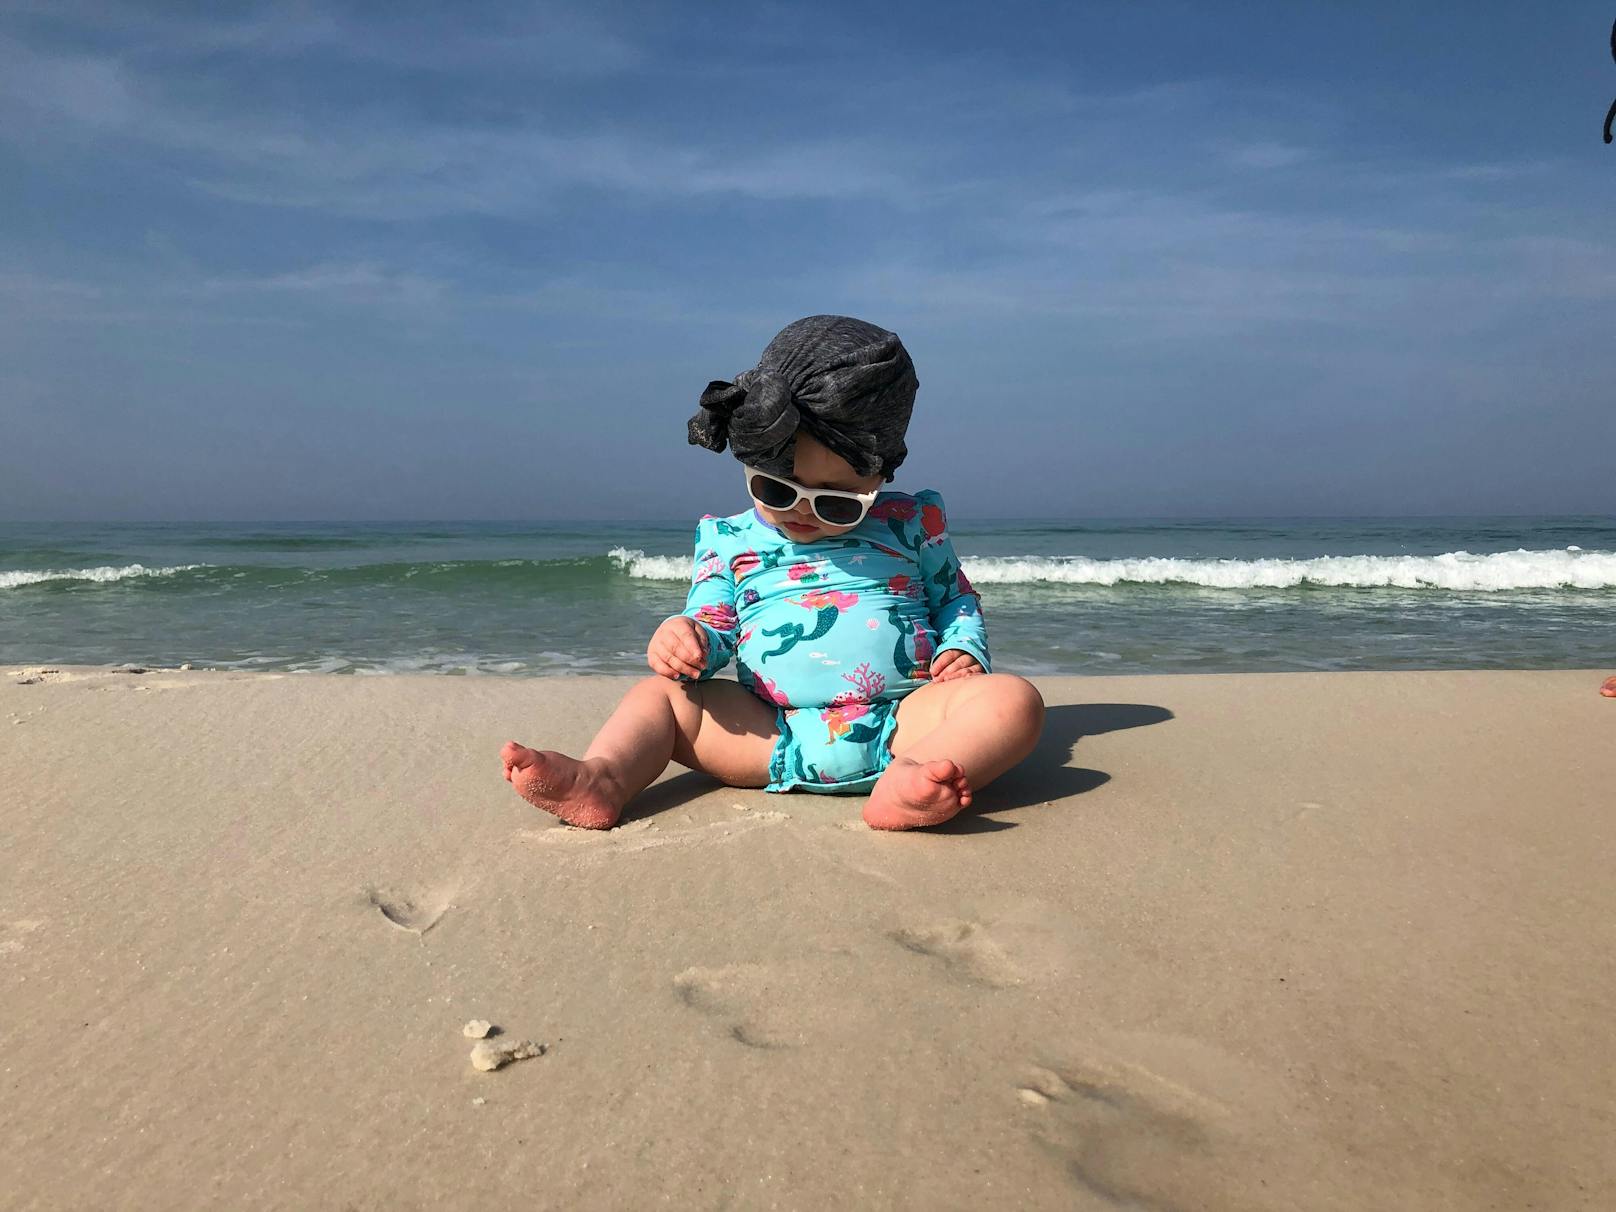 Sonnenschutz: Darf ich mein Baby überhaupt eincremen? – Gesundheit